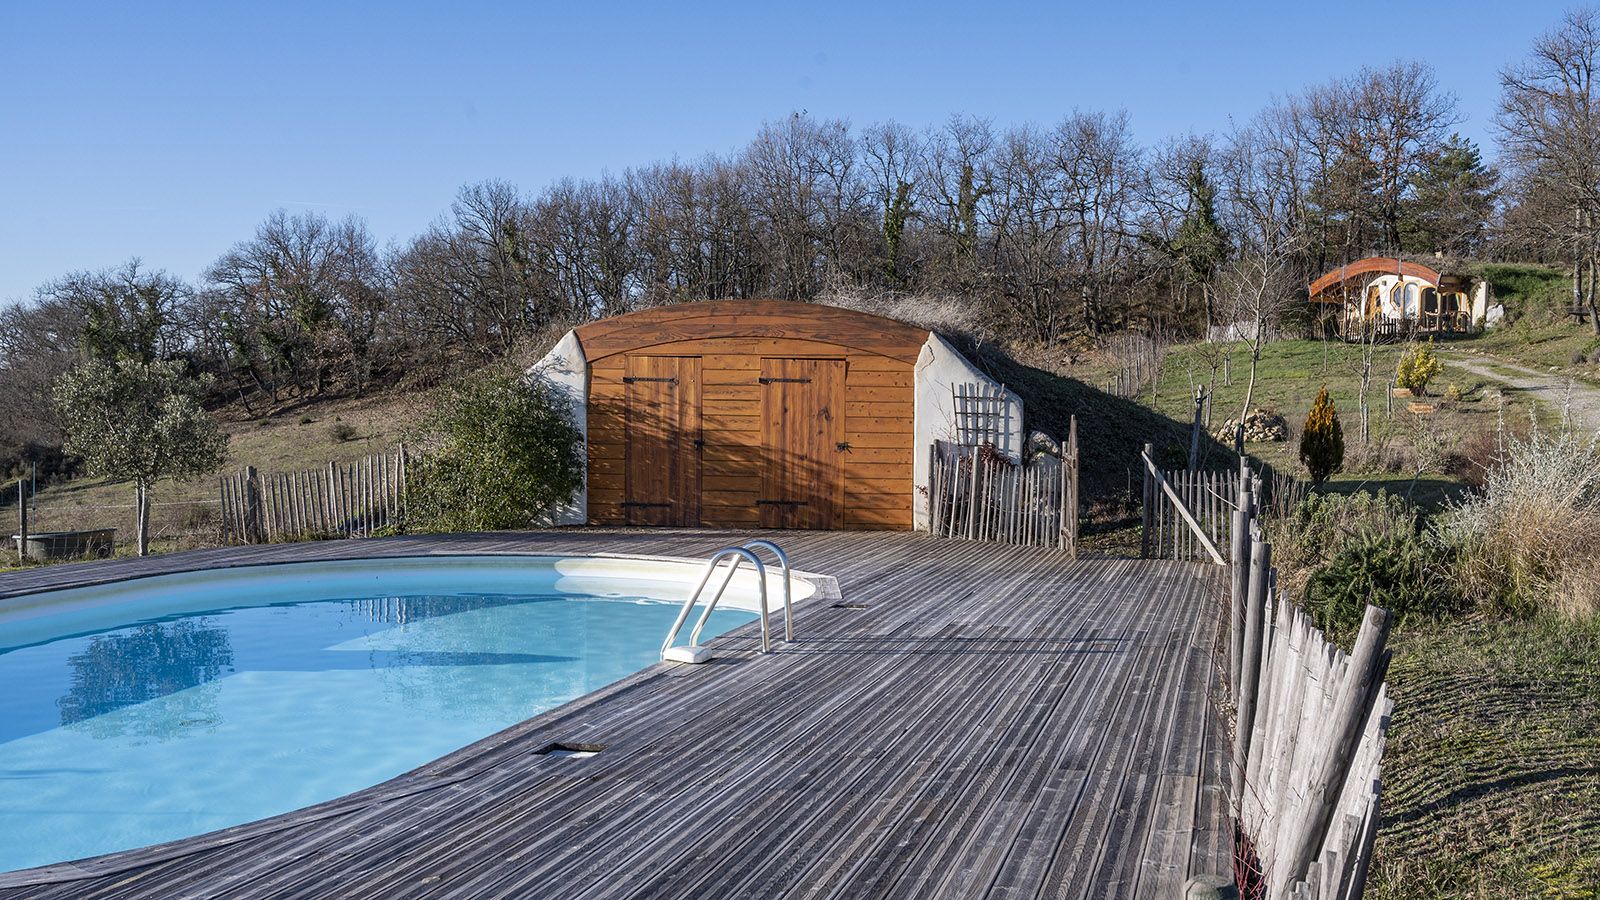 Die Maison Troglodyte ist ein Ganzjahresreiseziel – und so ist auch Winterbaden möglich. Foto: Hilke Maunder